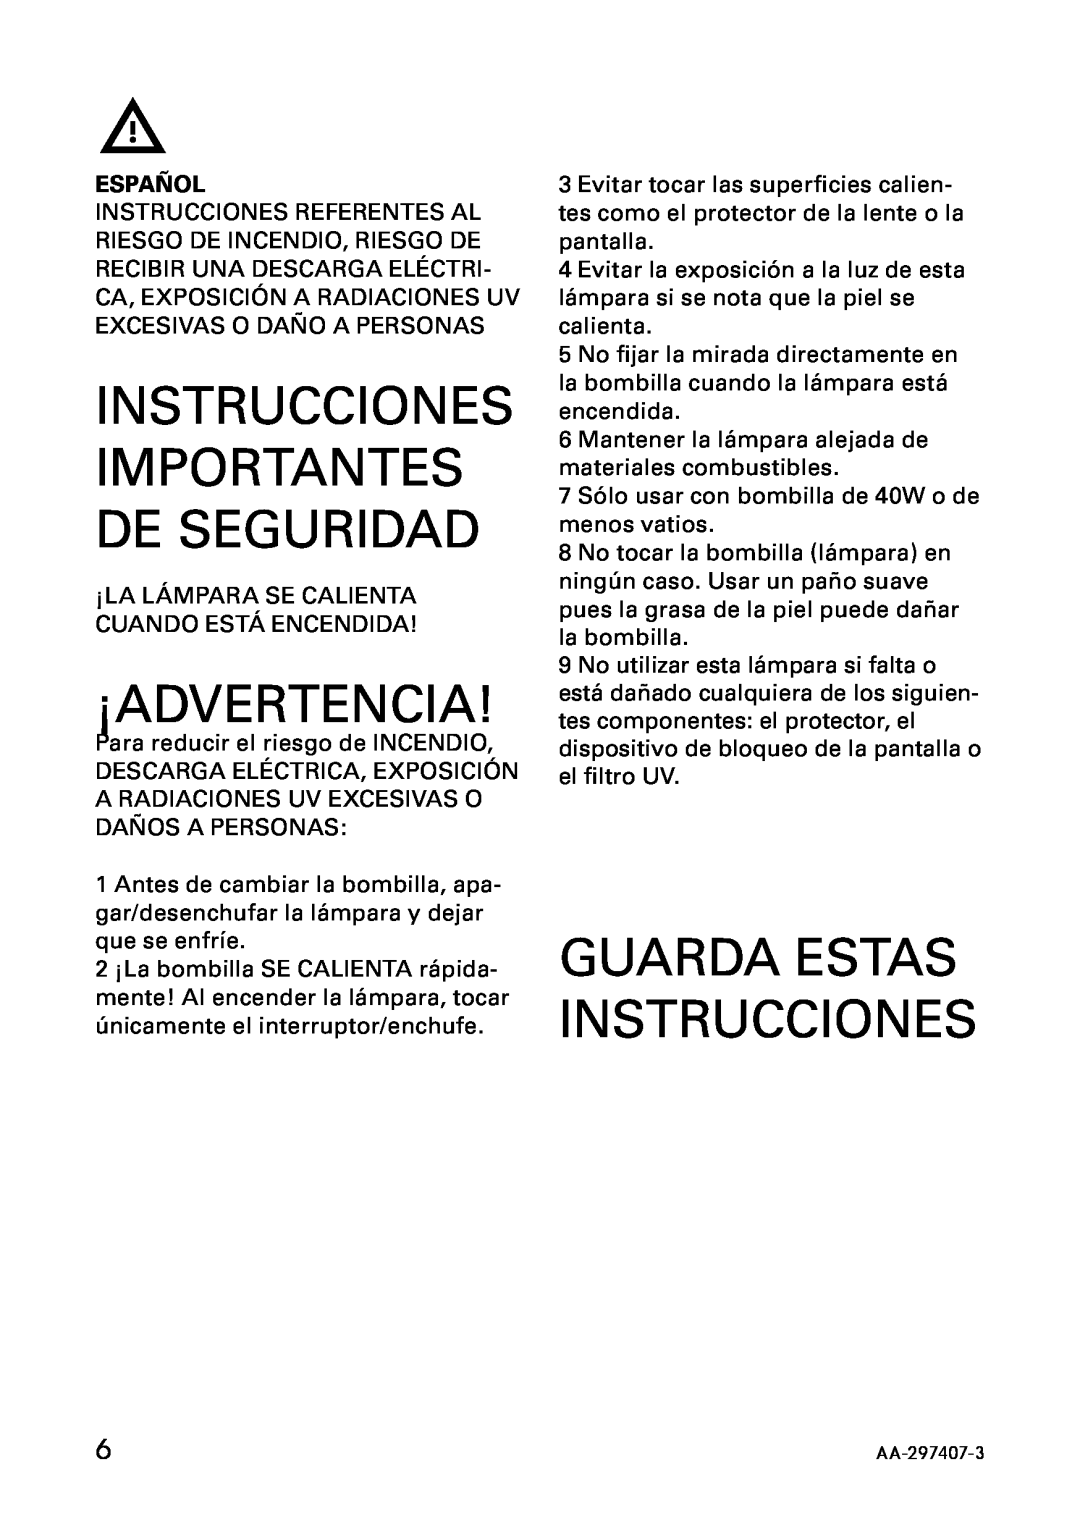 IKEA AA-297408-3, AA-297407-3 ¡Advertencia, Instrucciones Importantes De Seguridad, Guarda Estas Instrucciones, Español 